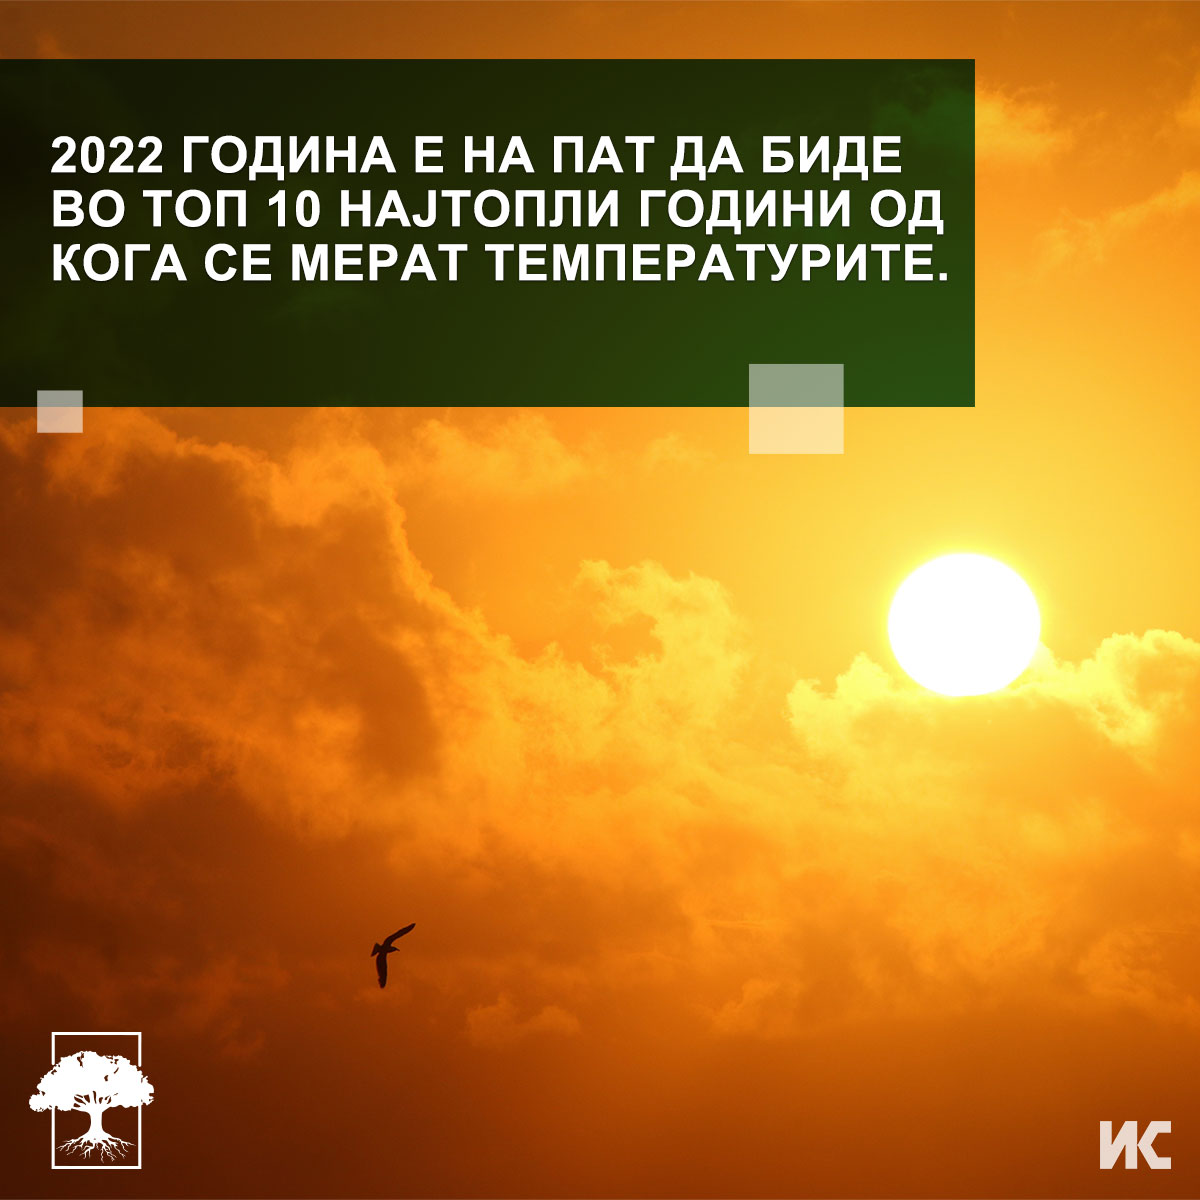 Фотографија од сонцето кое сјае позади облаци, со текст: „2022 година е на пат да биде во топ 10 најтопли години од кога се мерат температурите.“